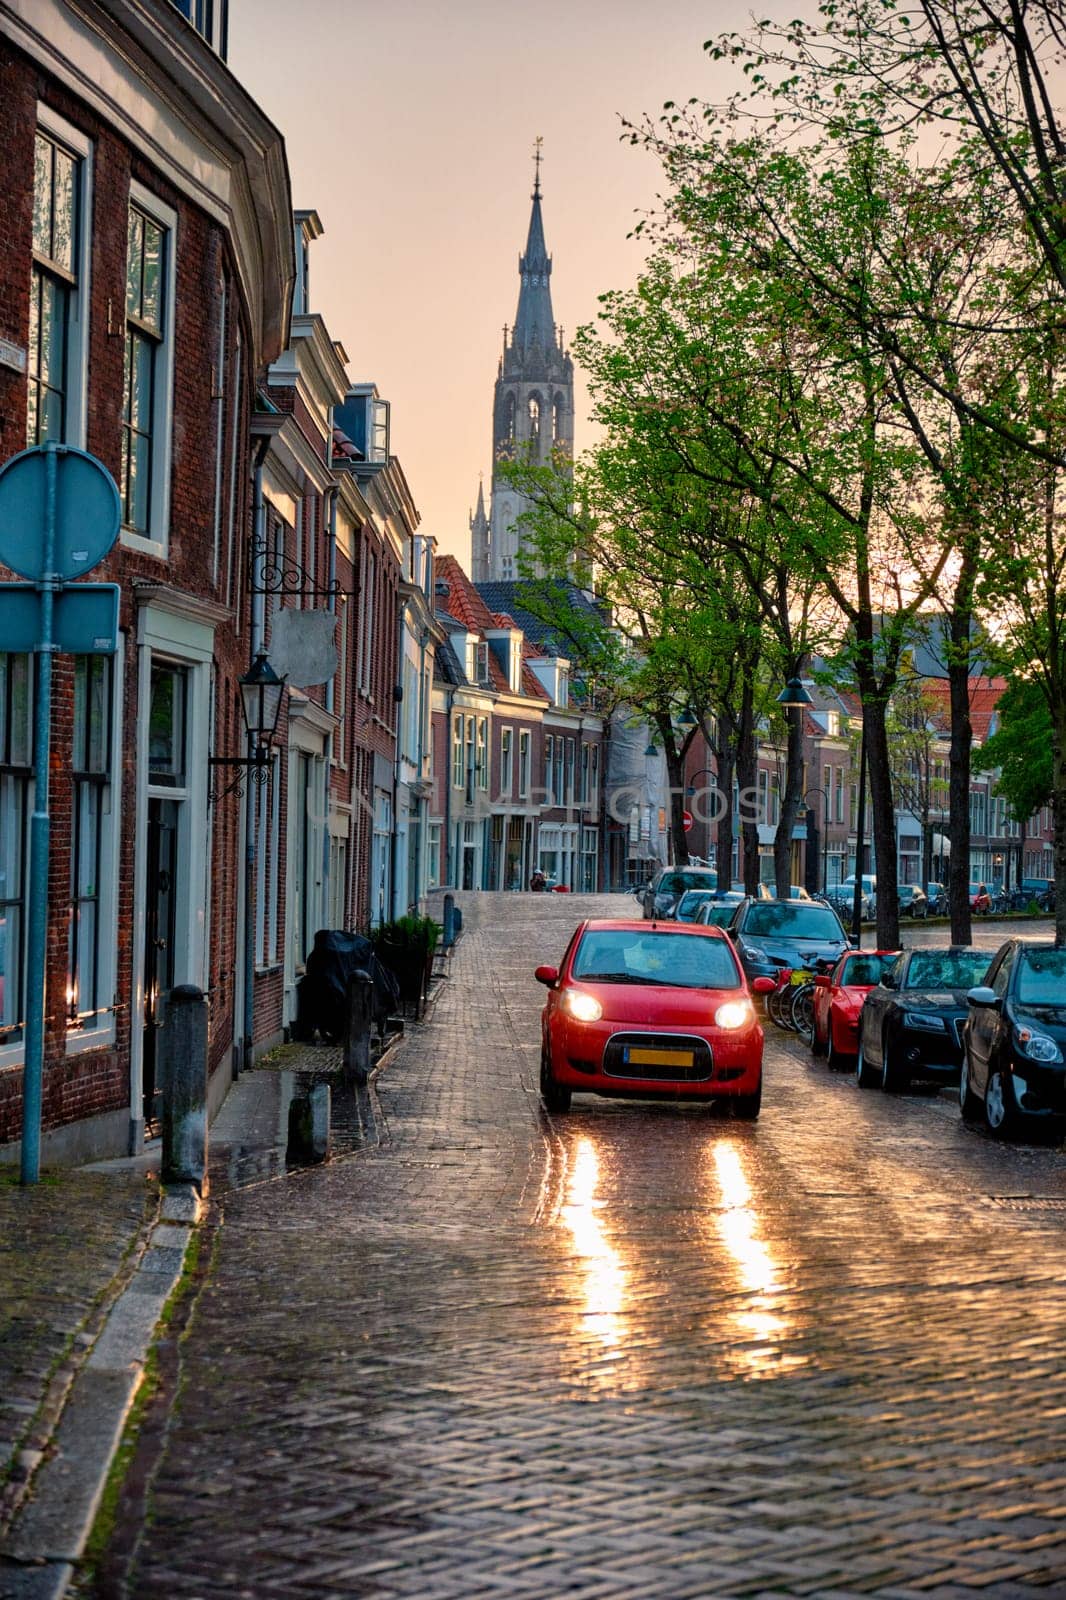 Delft cobblestone street with car in the rain by dimol